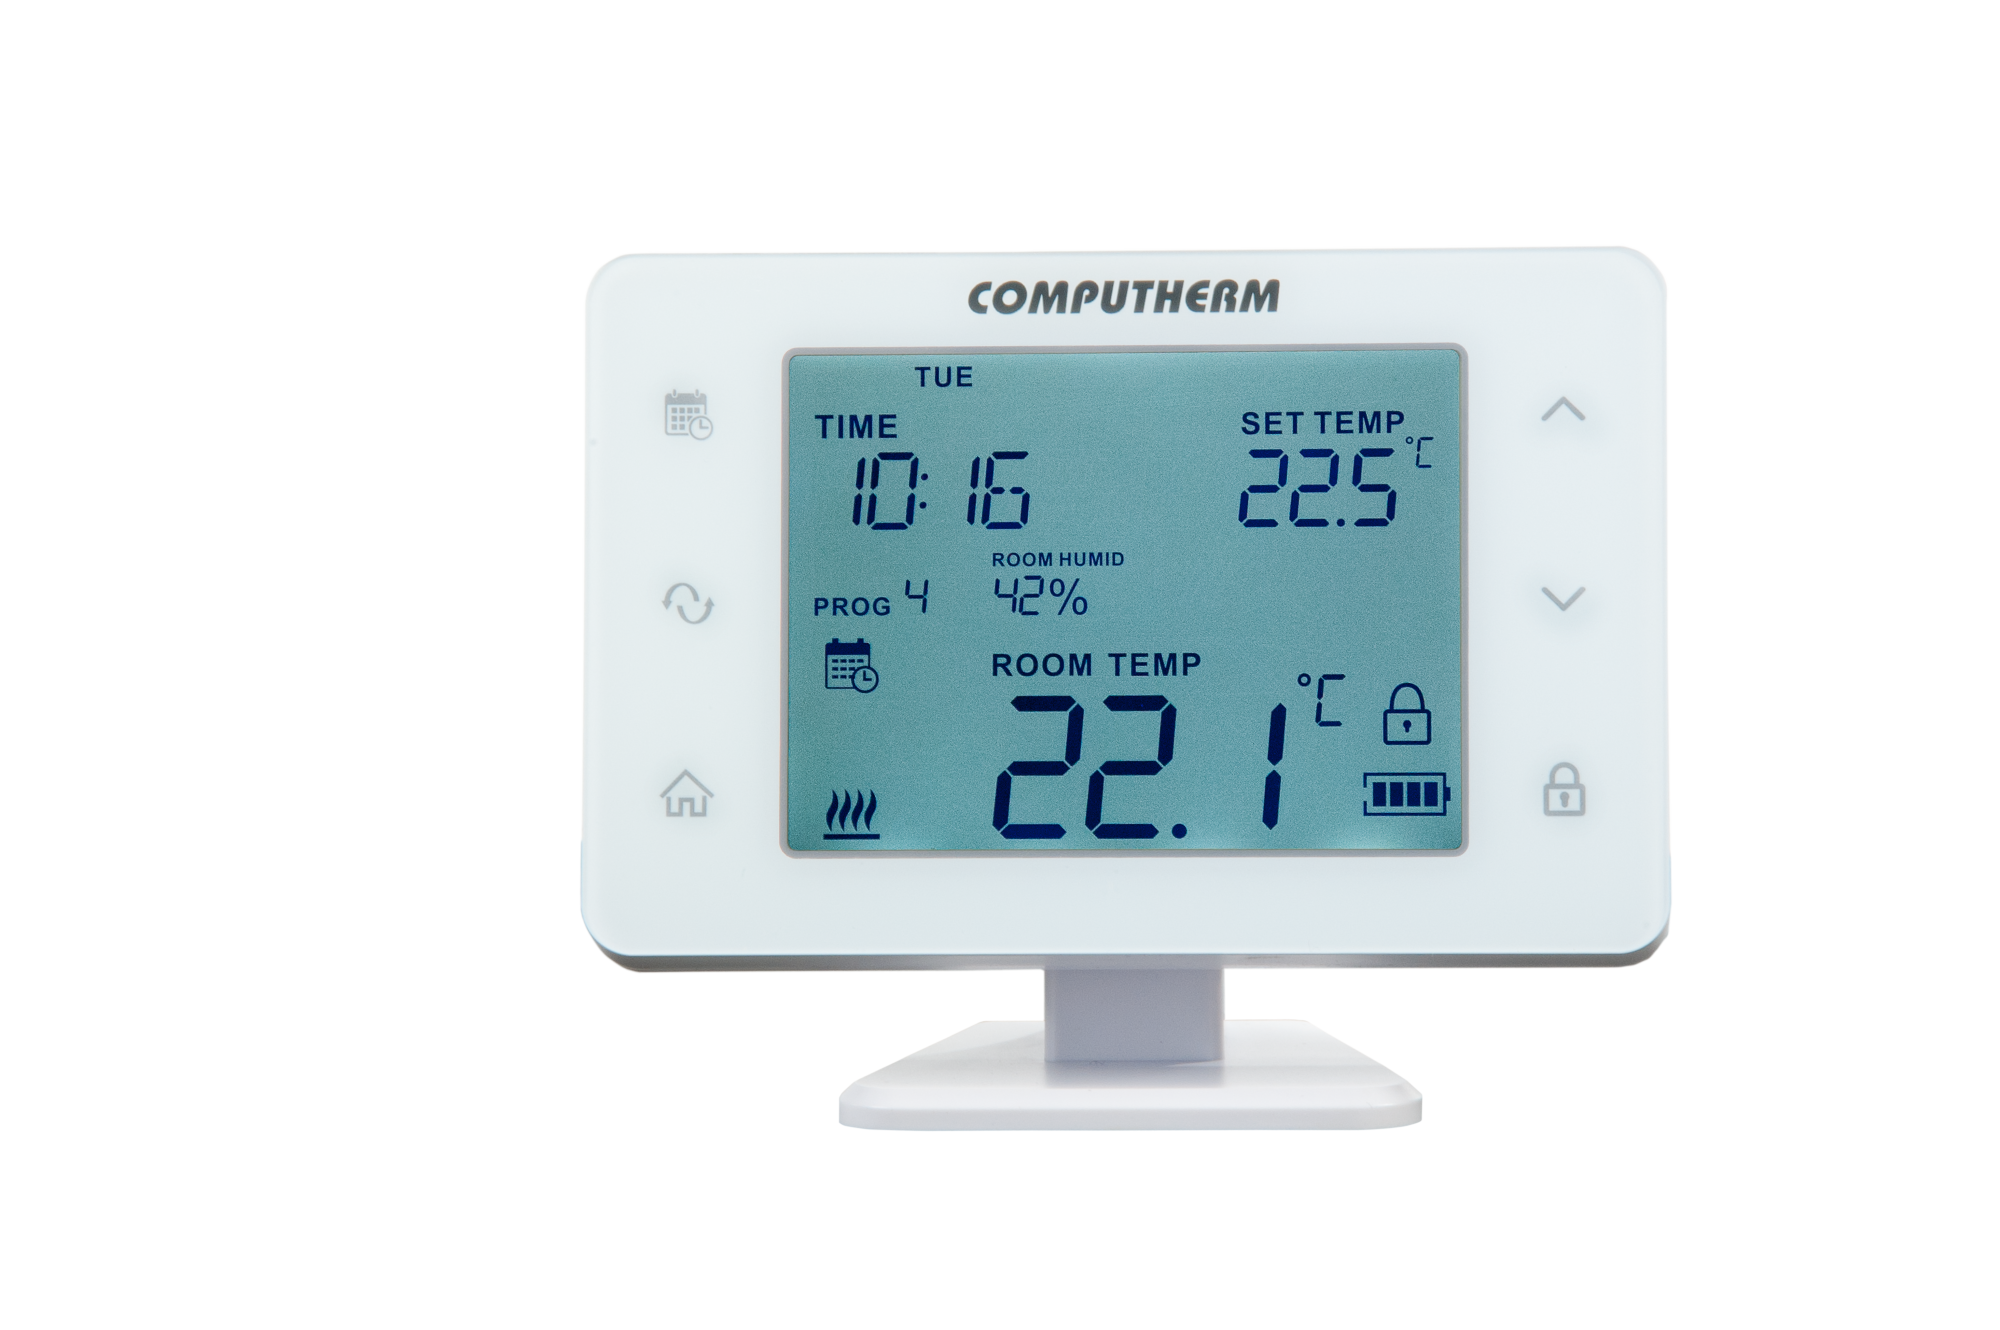 Q20RF - Programmable wireless digital room thermostat - Quantrax Ltd.